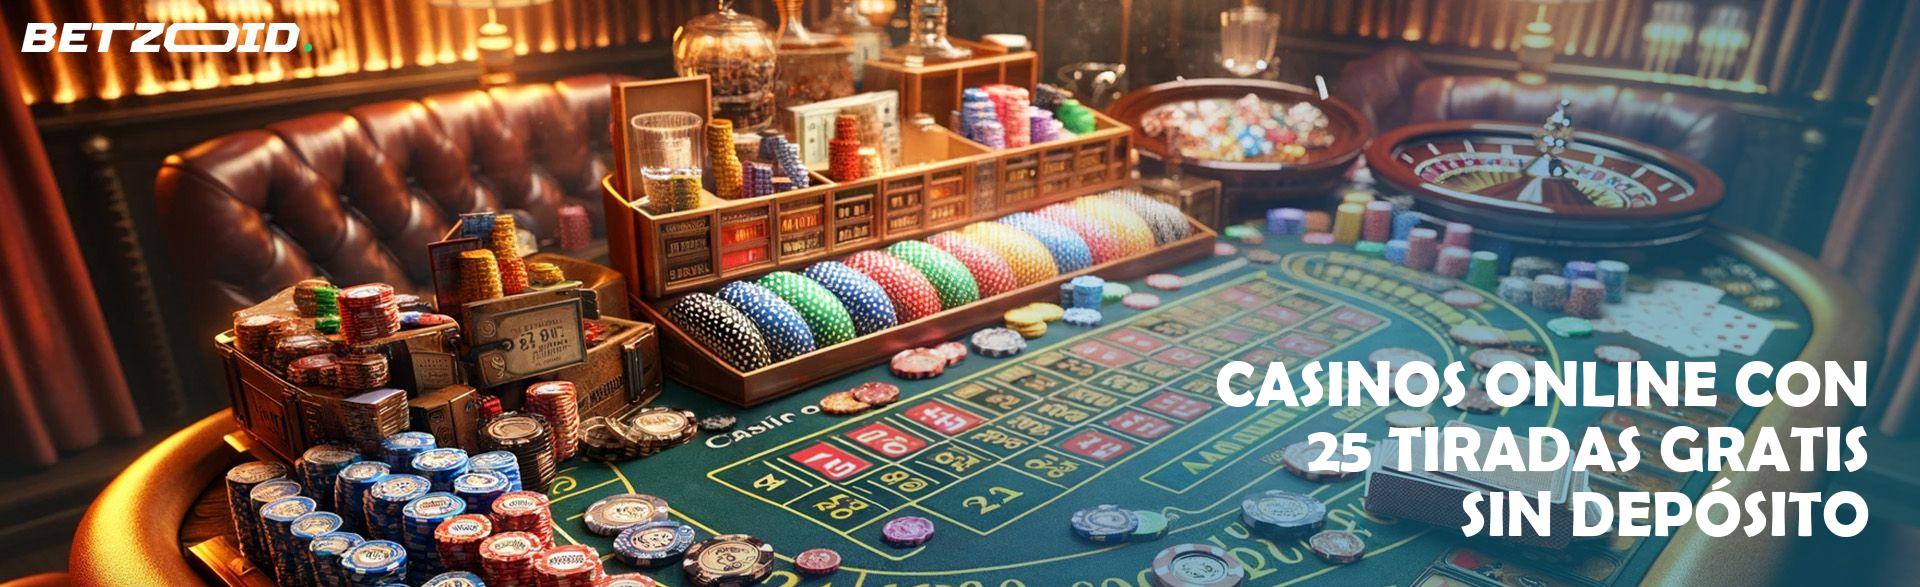 Casinos Online con 25 Tiradas Gratis sin Depósito.